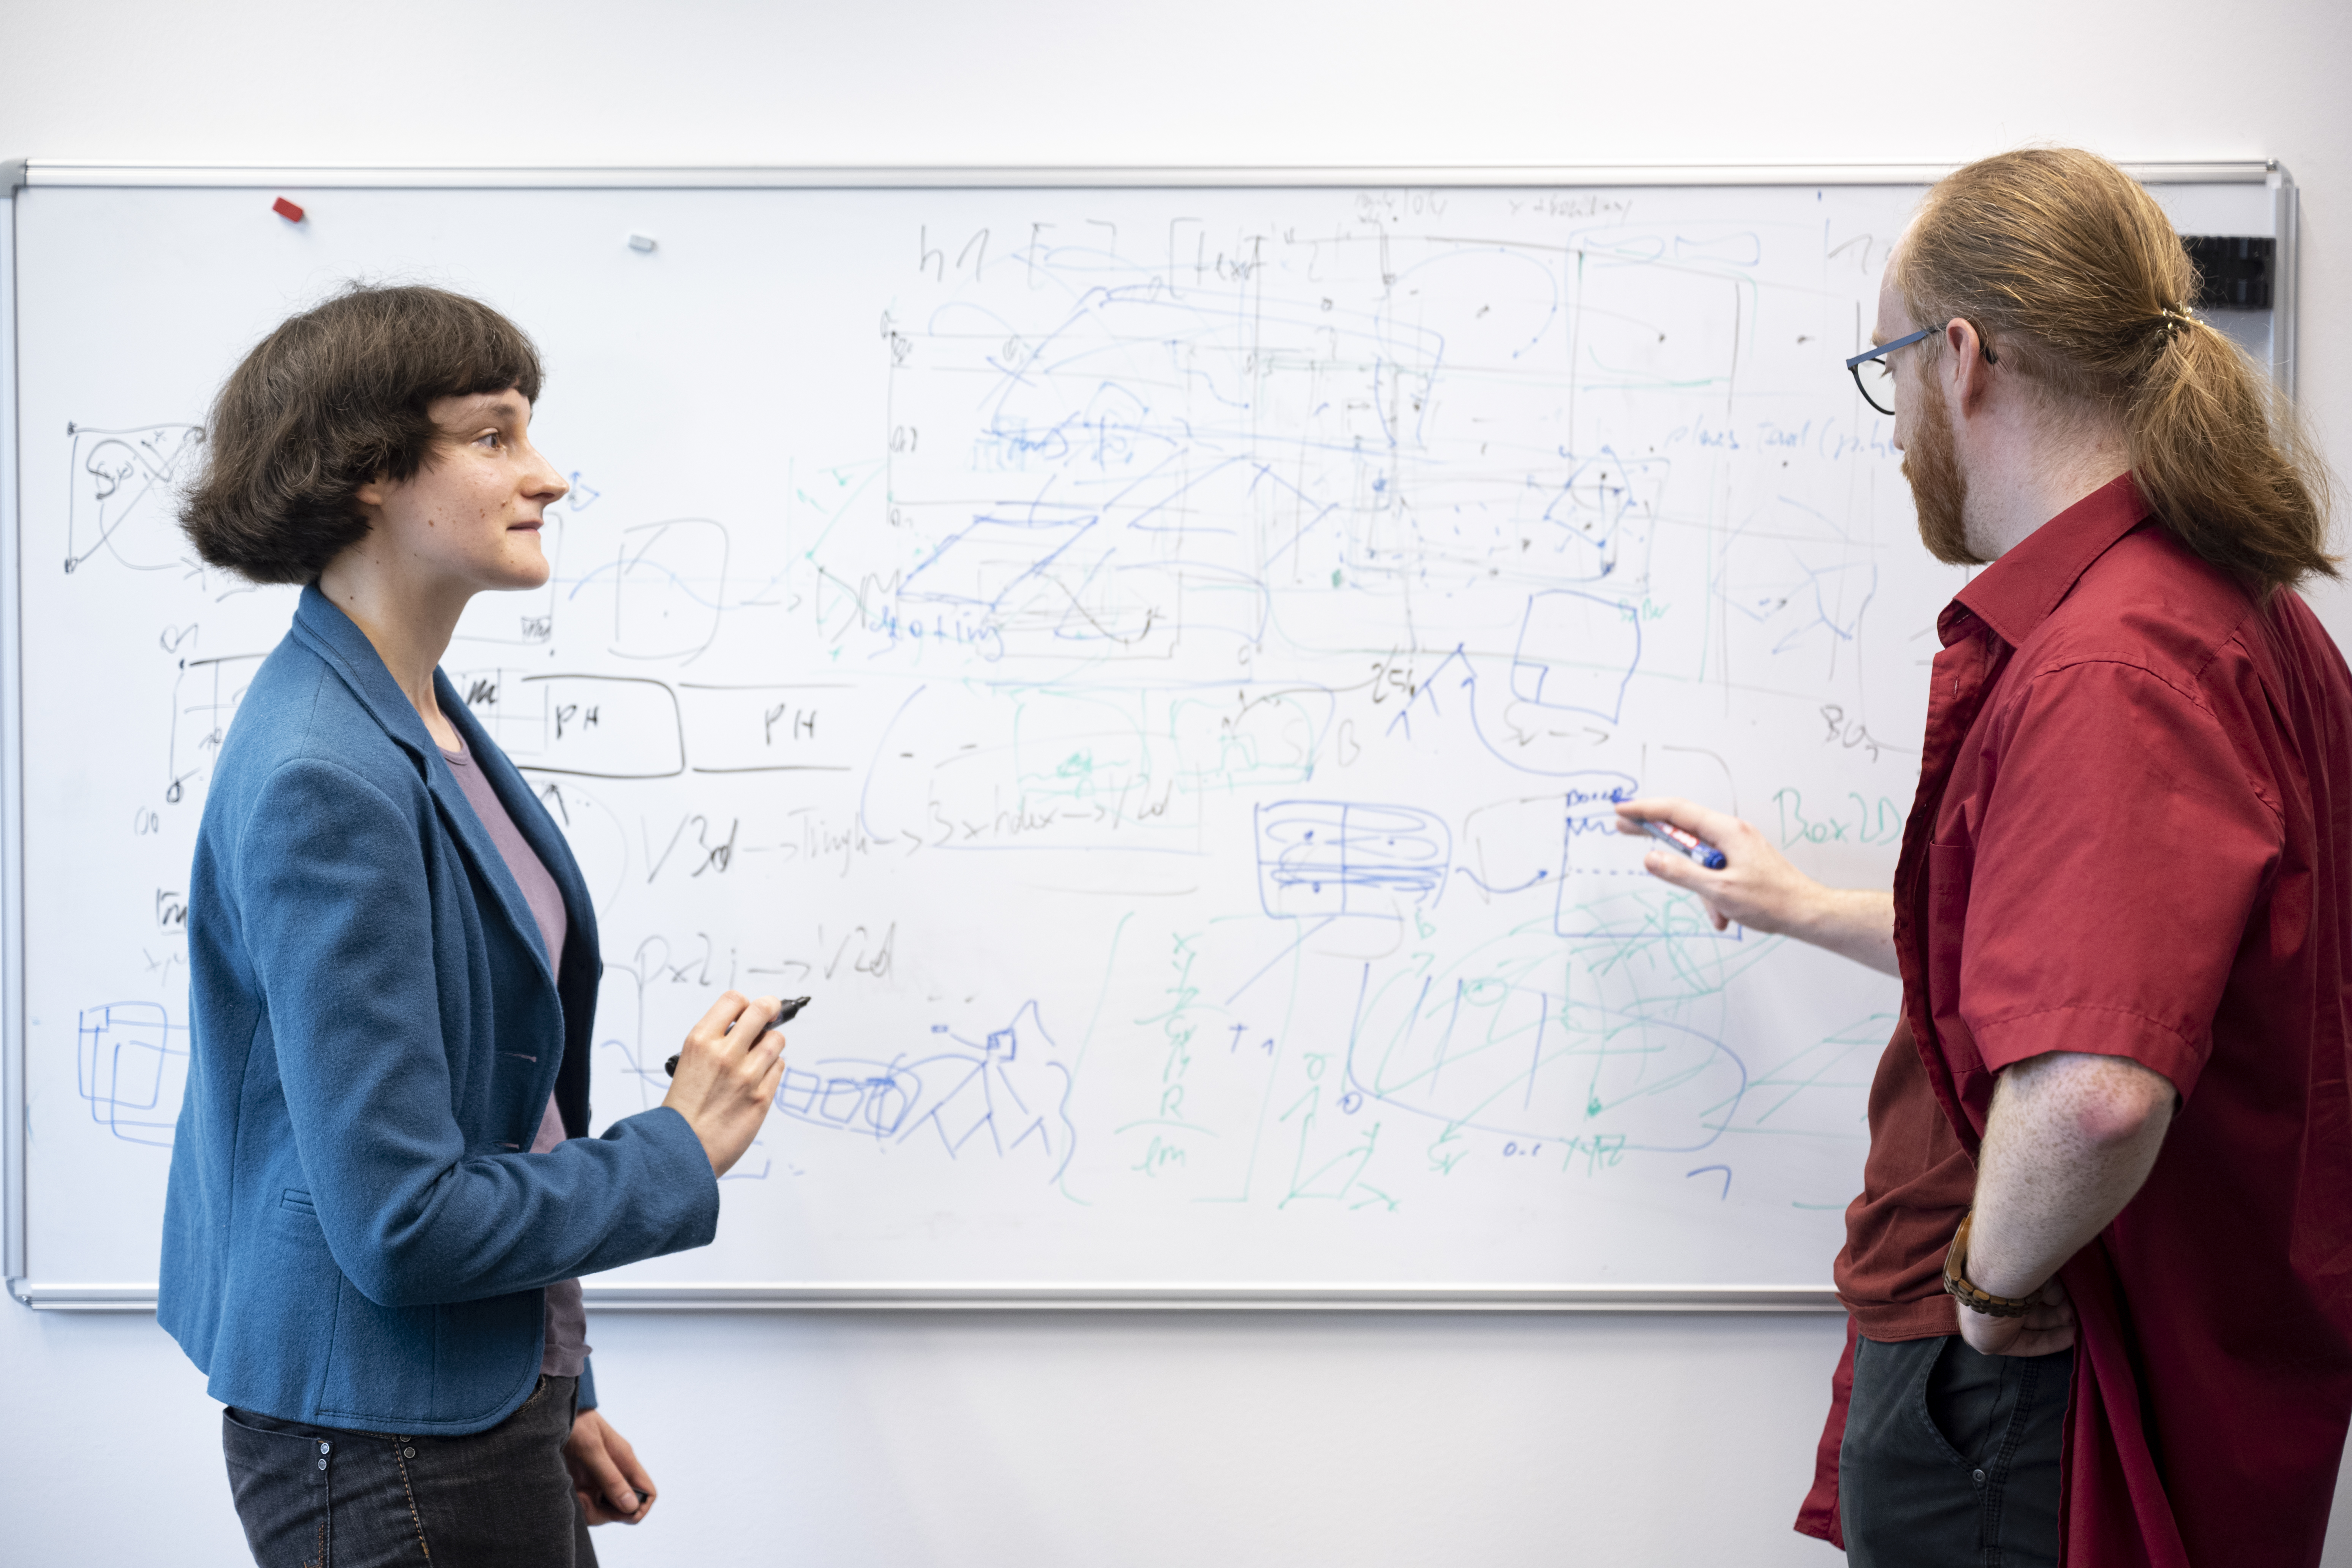 Eine Forscherin (links) und ein Forscher (rechts) stehen vor einem dicht beschriebenen Whiteboard und diskutieren eine Forschungsfrage.